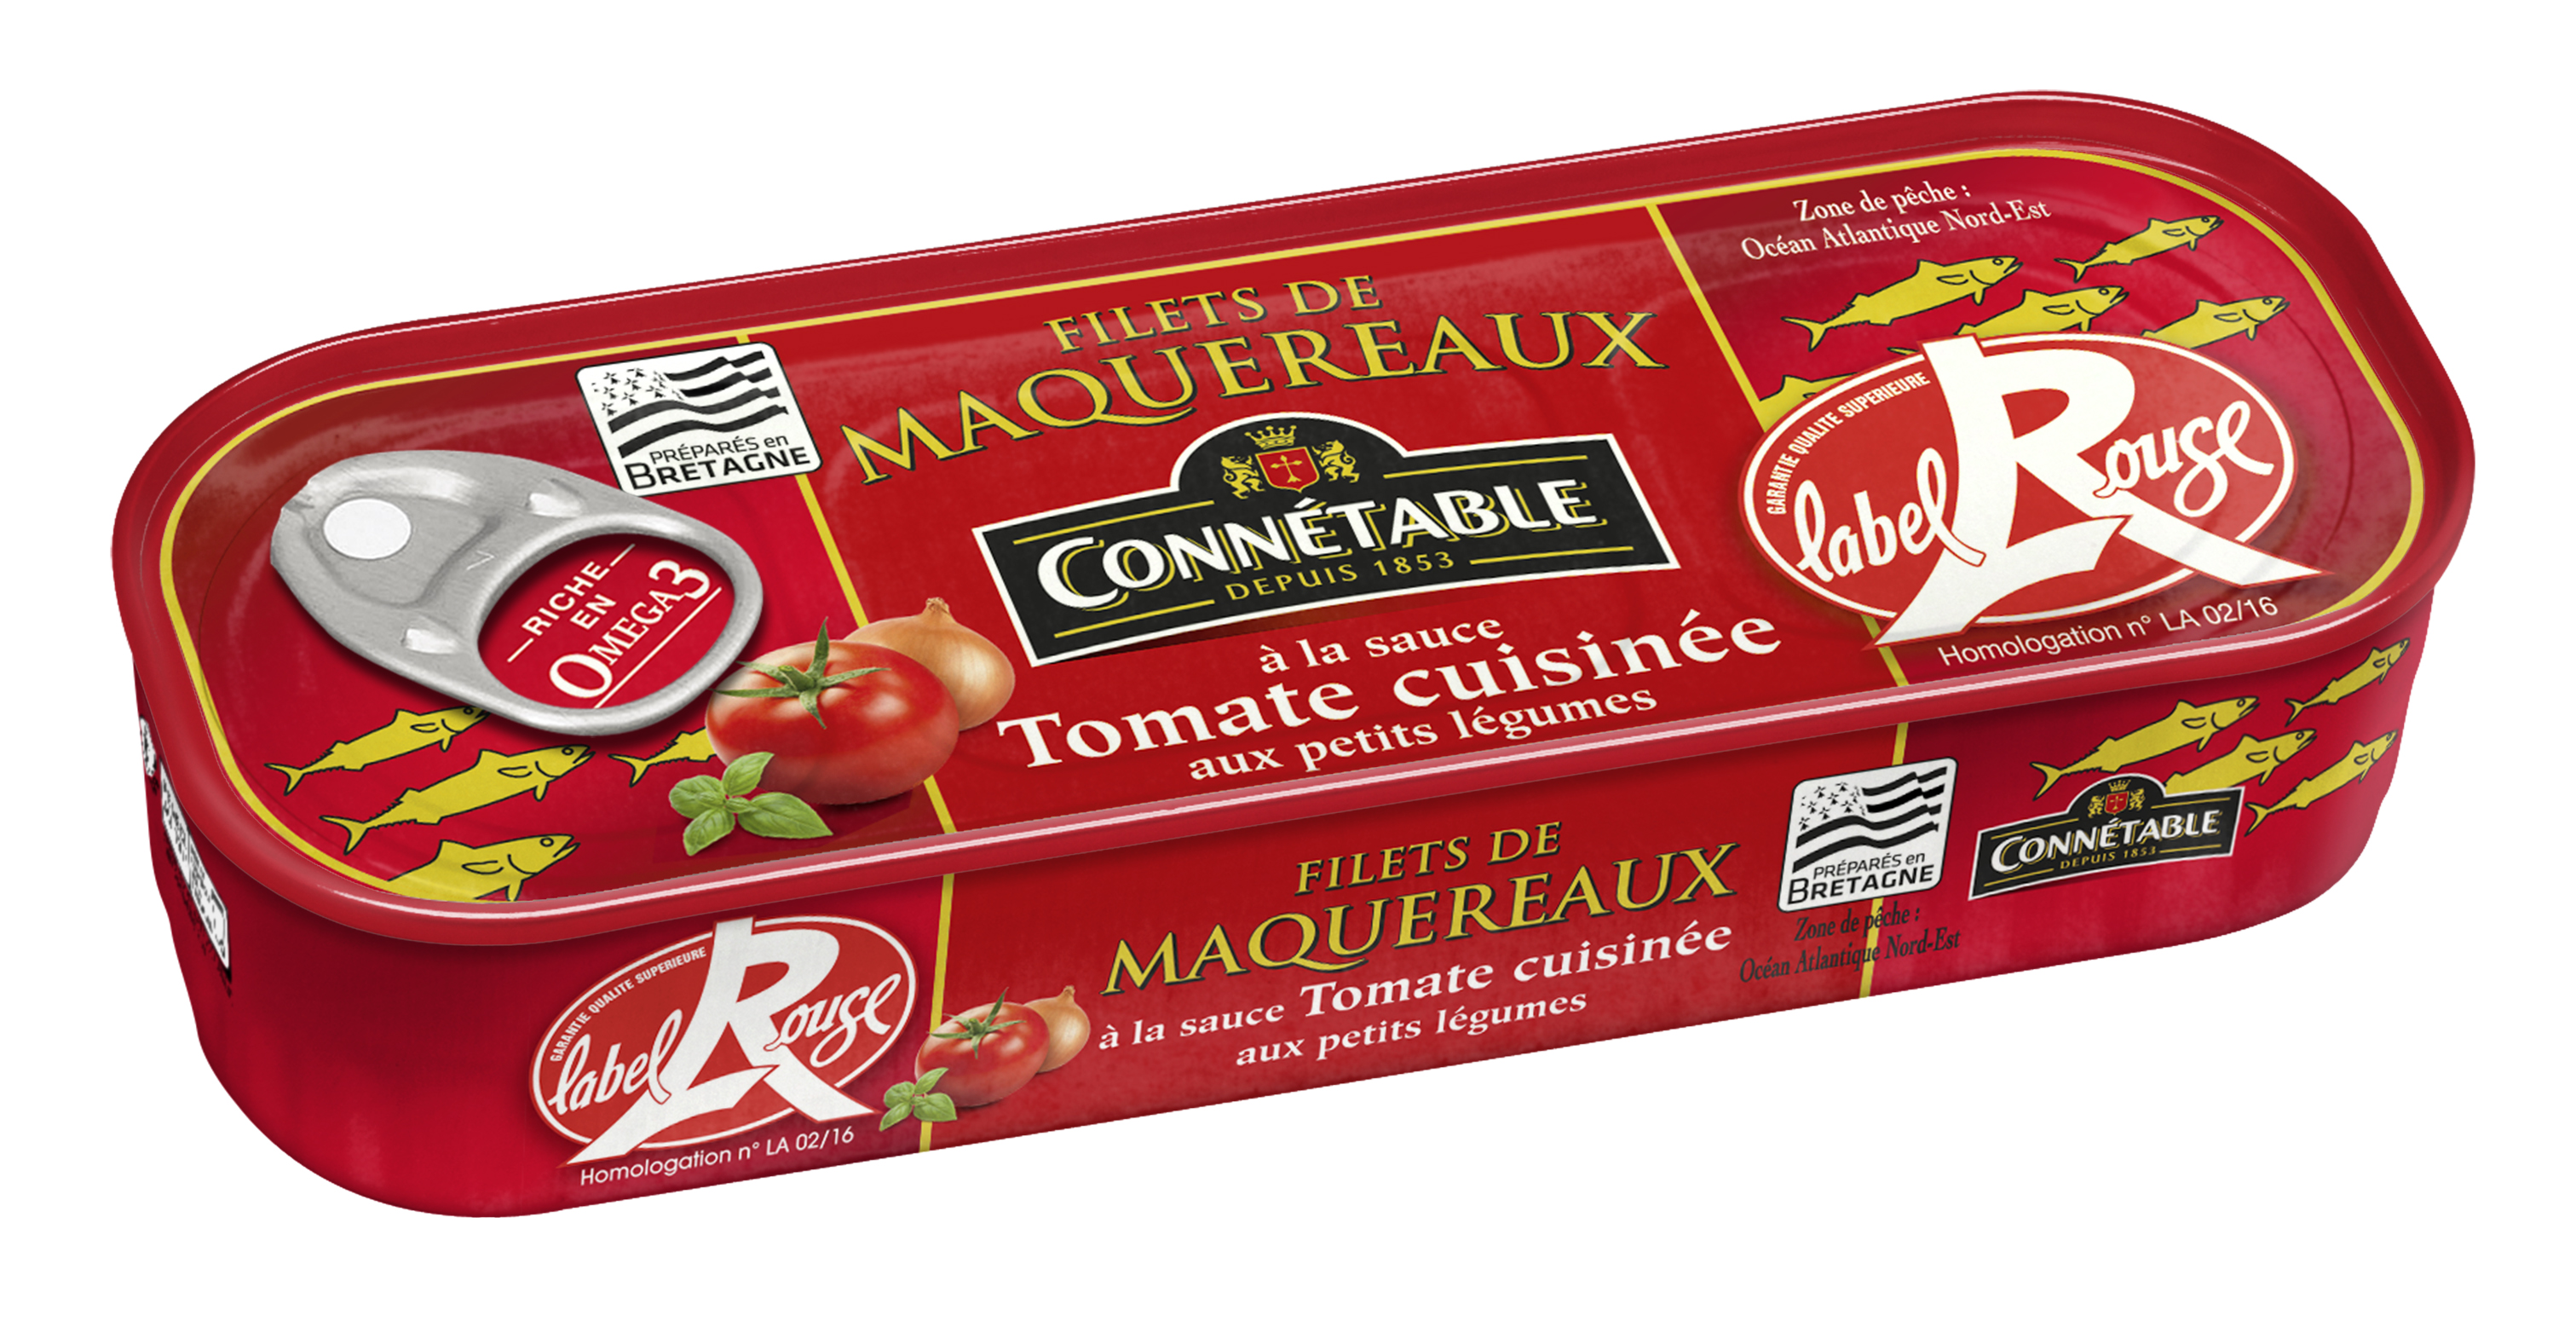 En vedette ce mois-ci, les filets de maquereaux à la sauce tomate cuisinée aux petits légumes Label Rouge